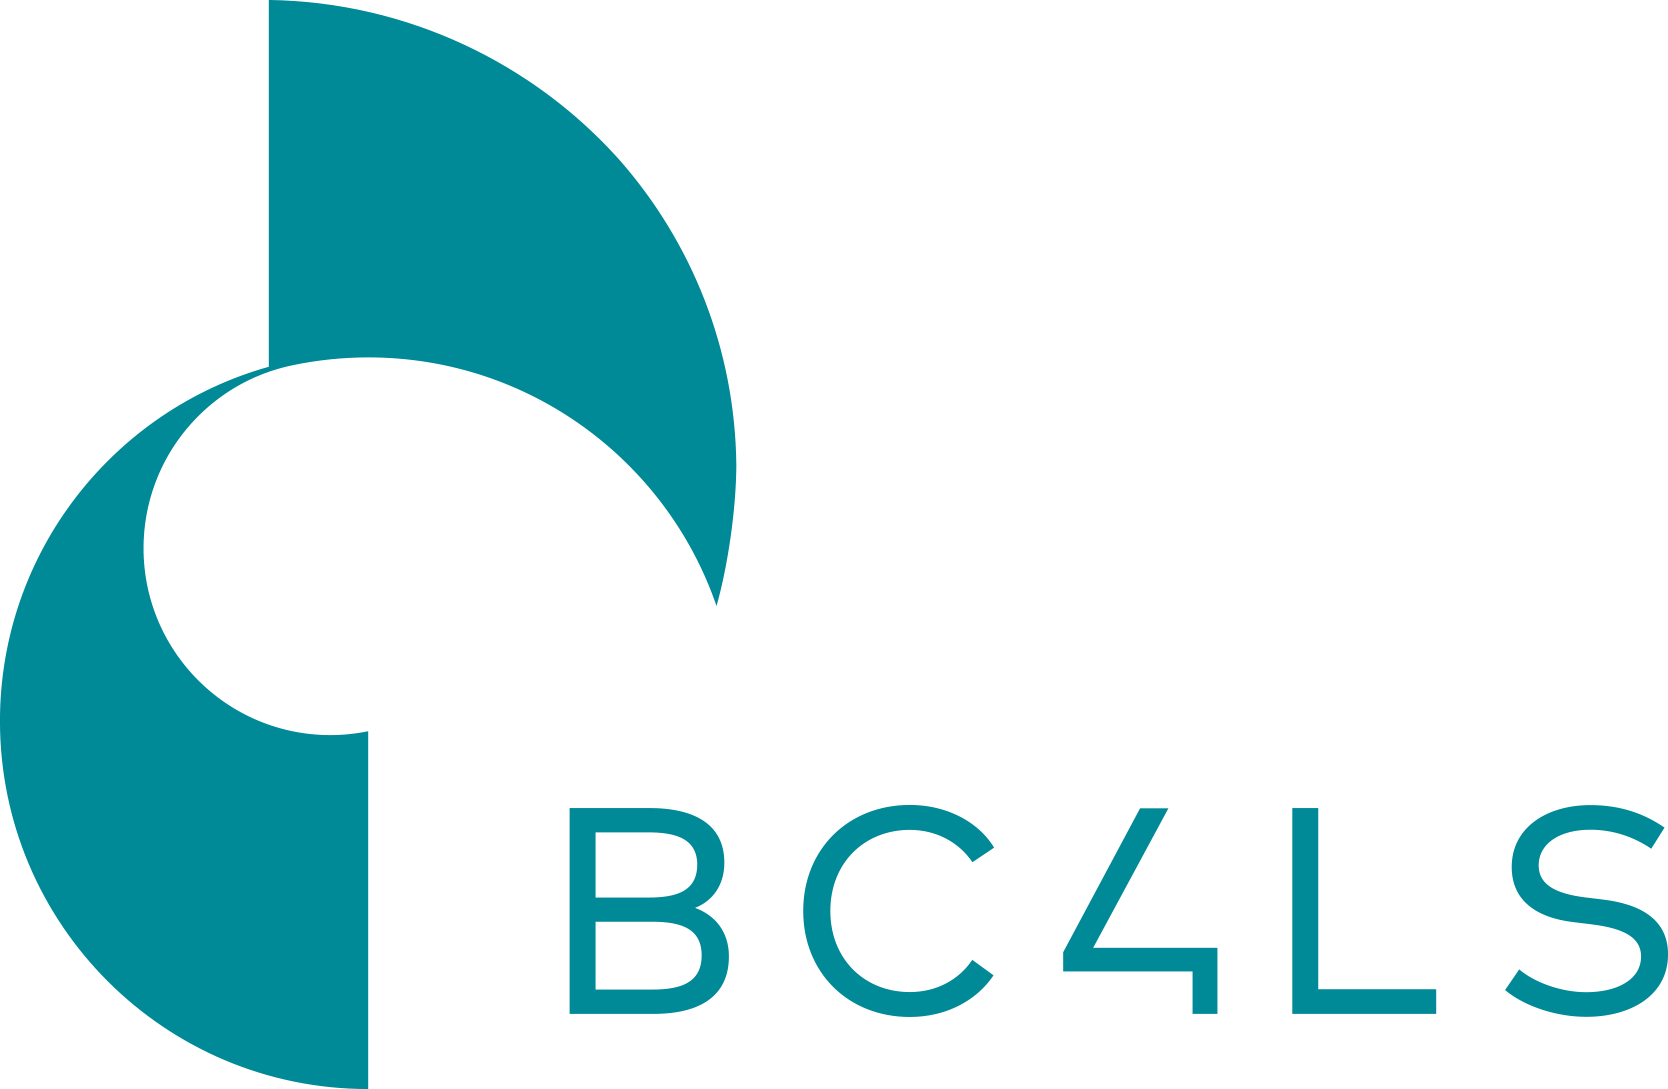 bc4ls-logo.png